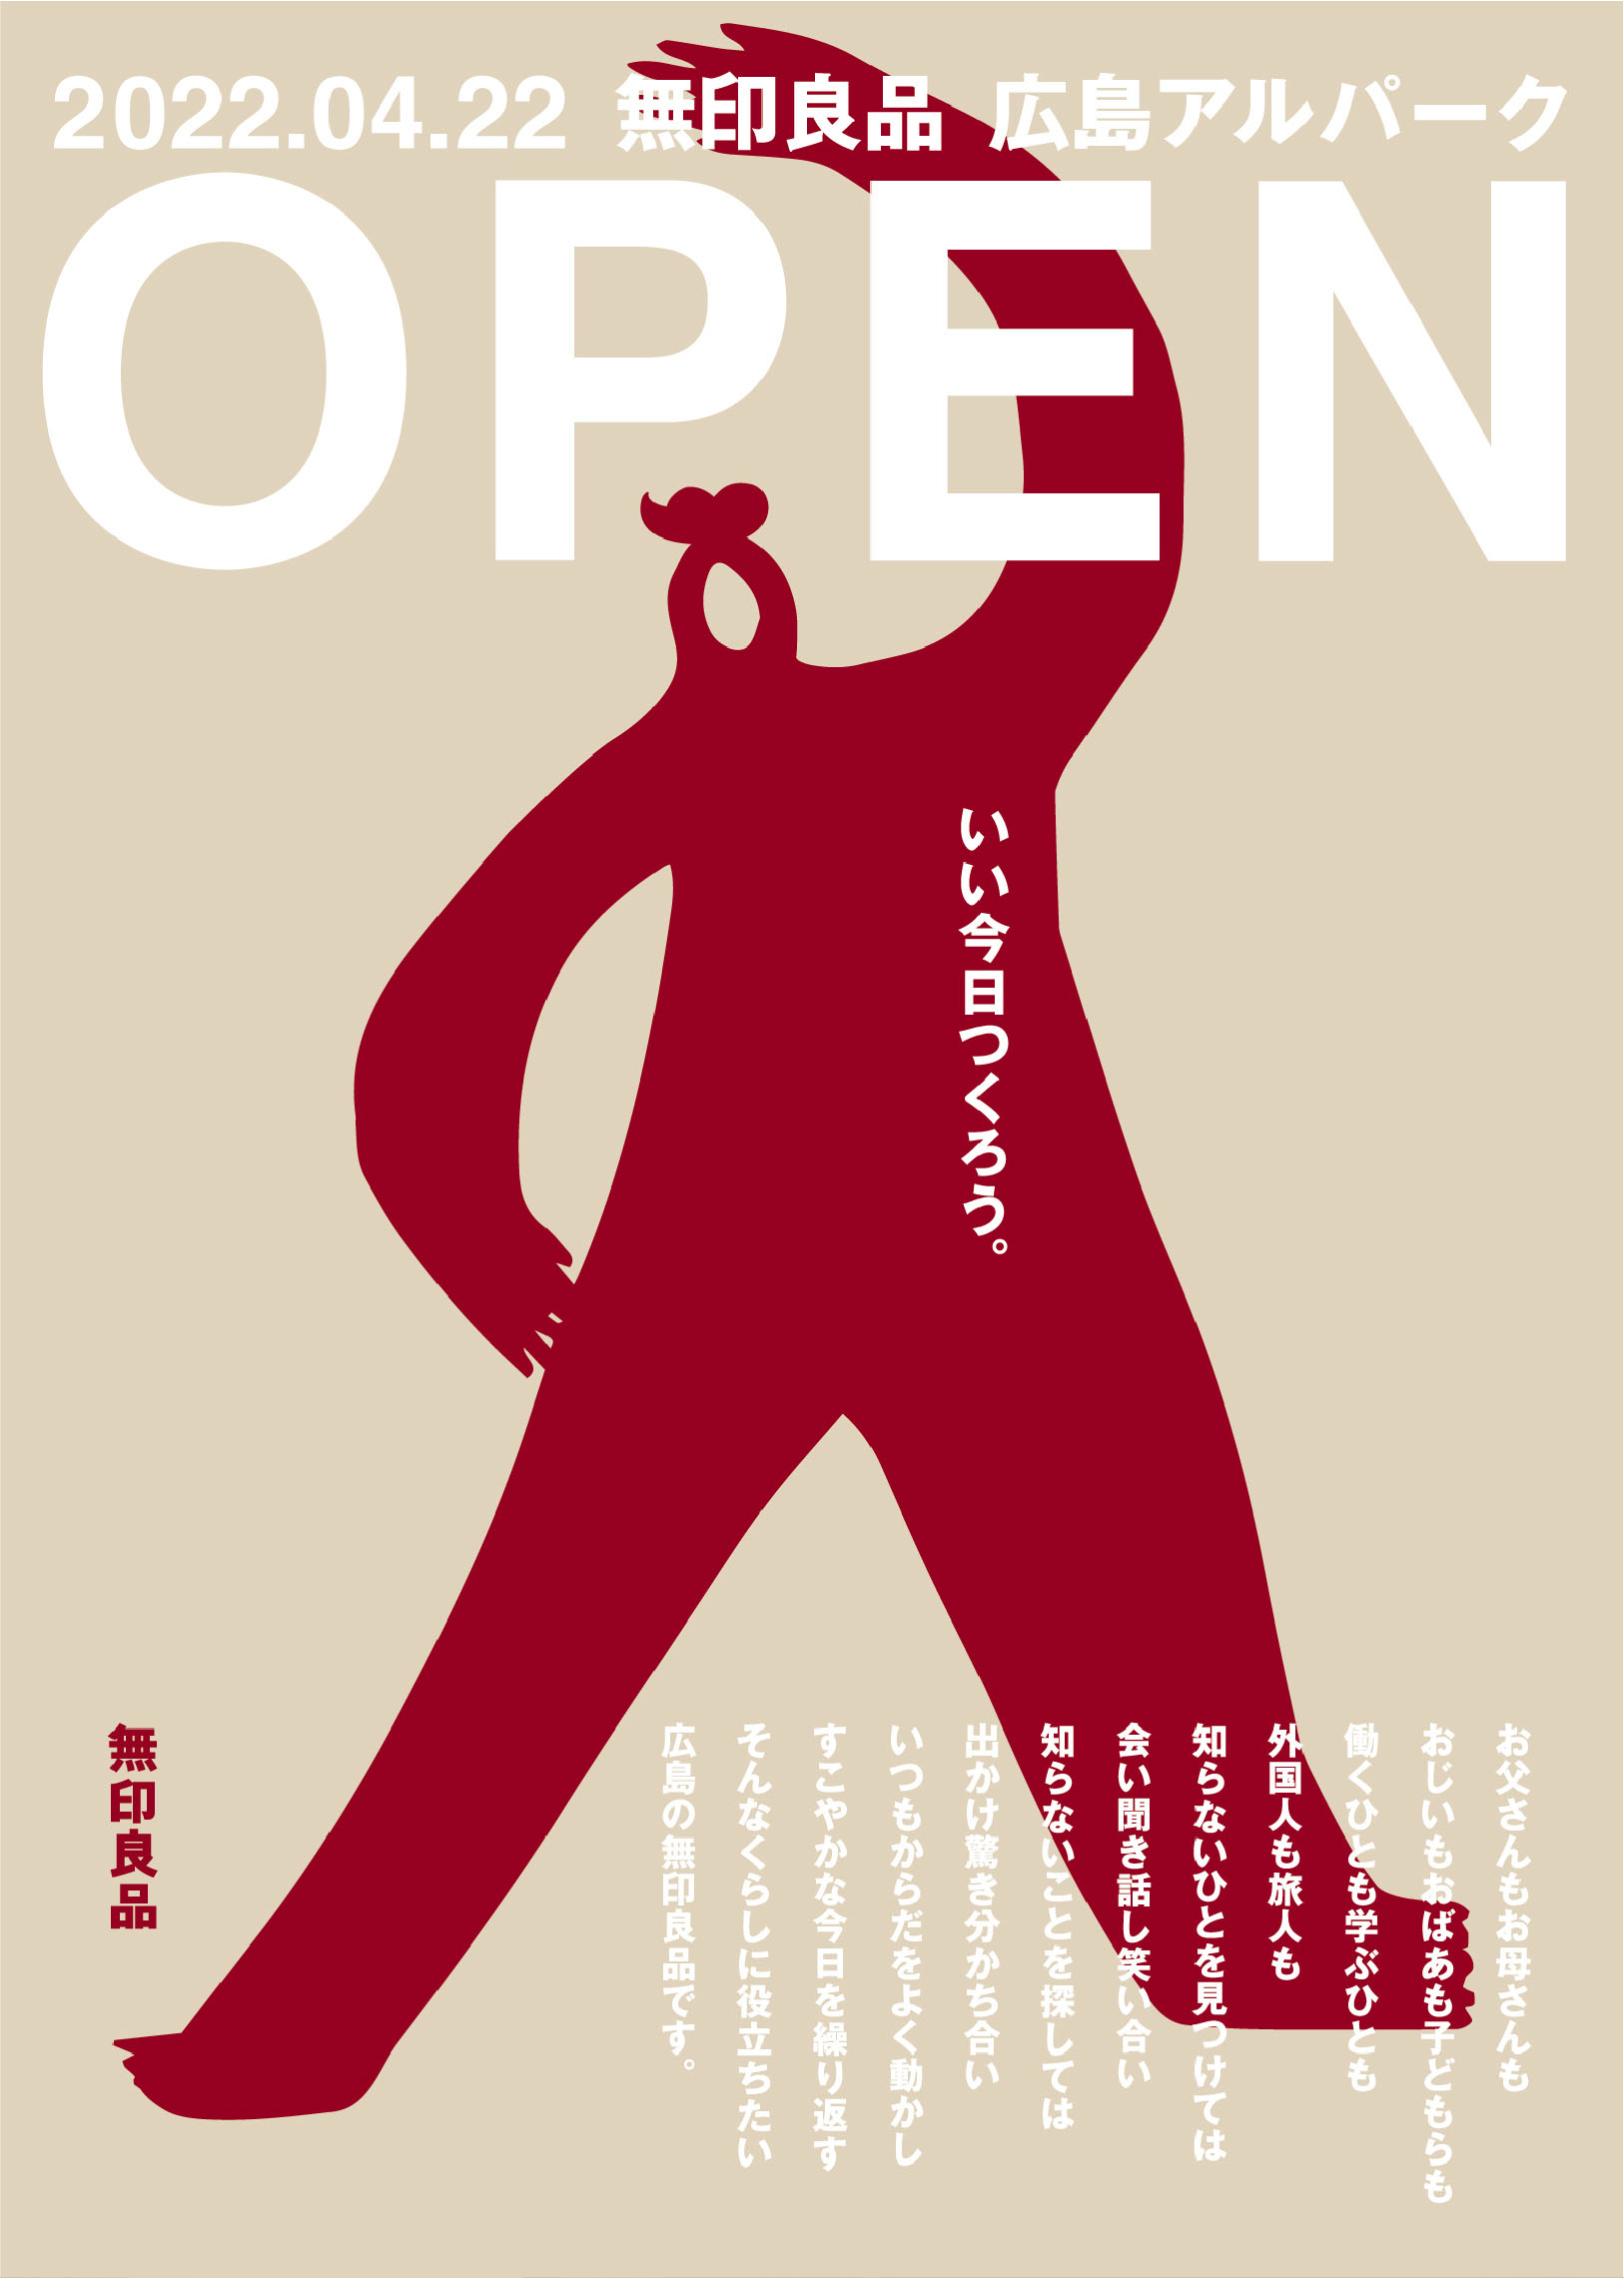 無印良品 広島アルパーク オープンビジュアル